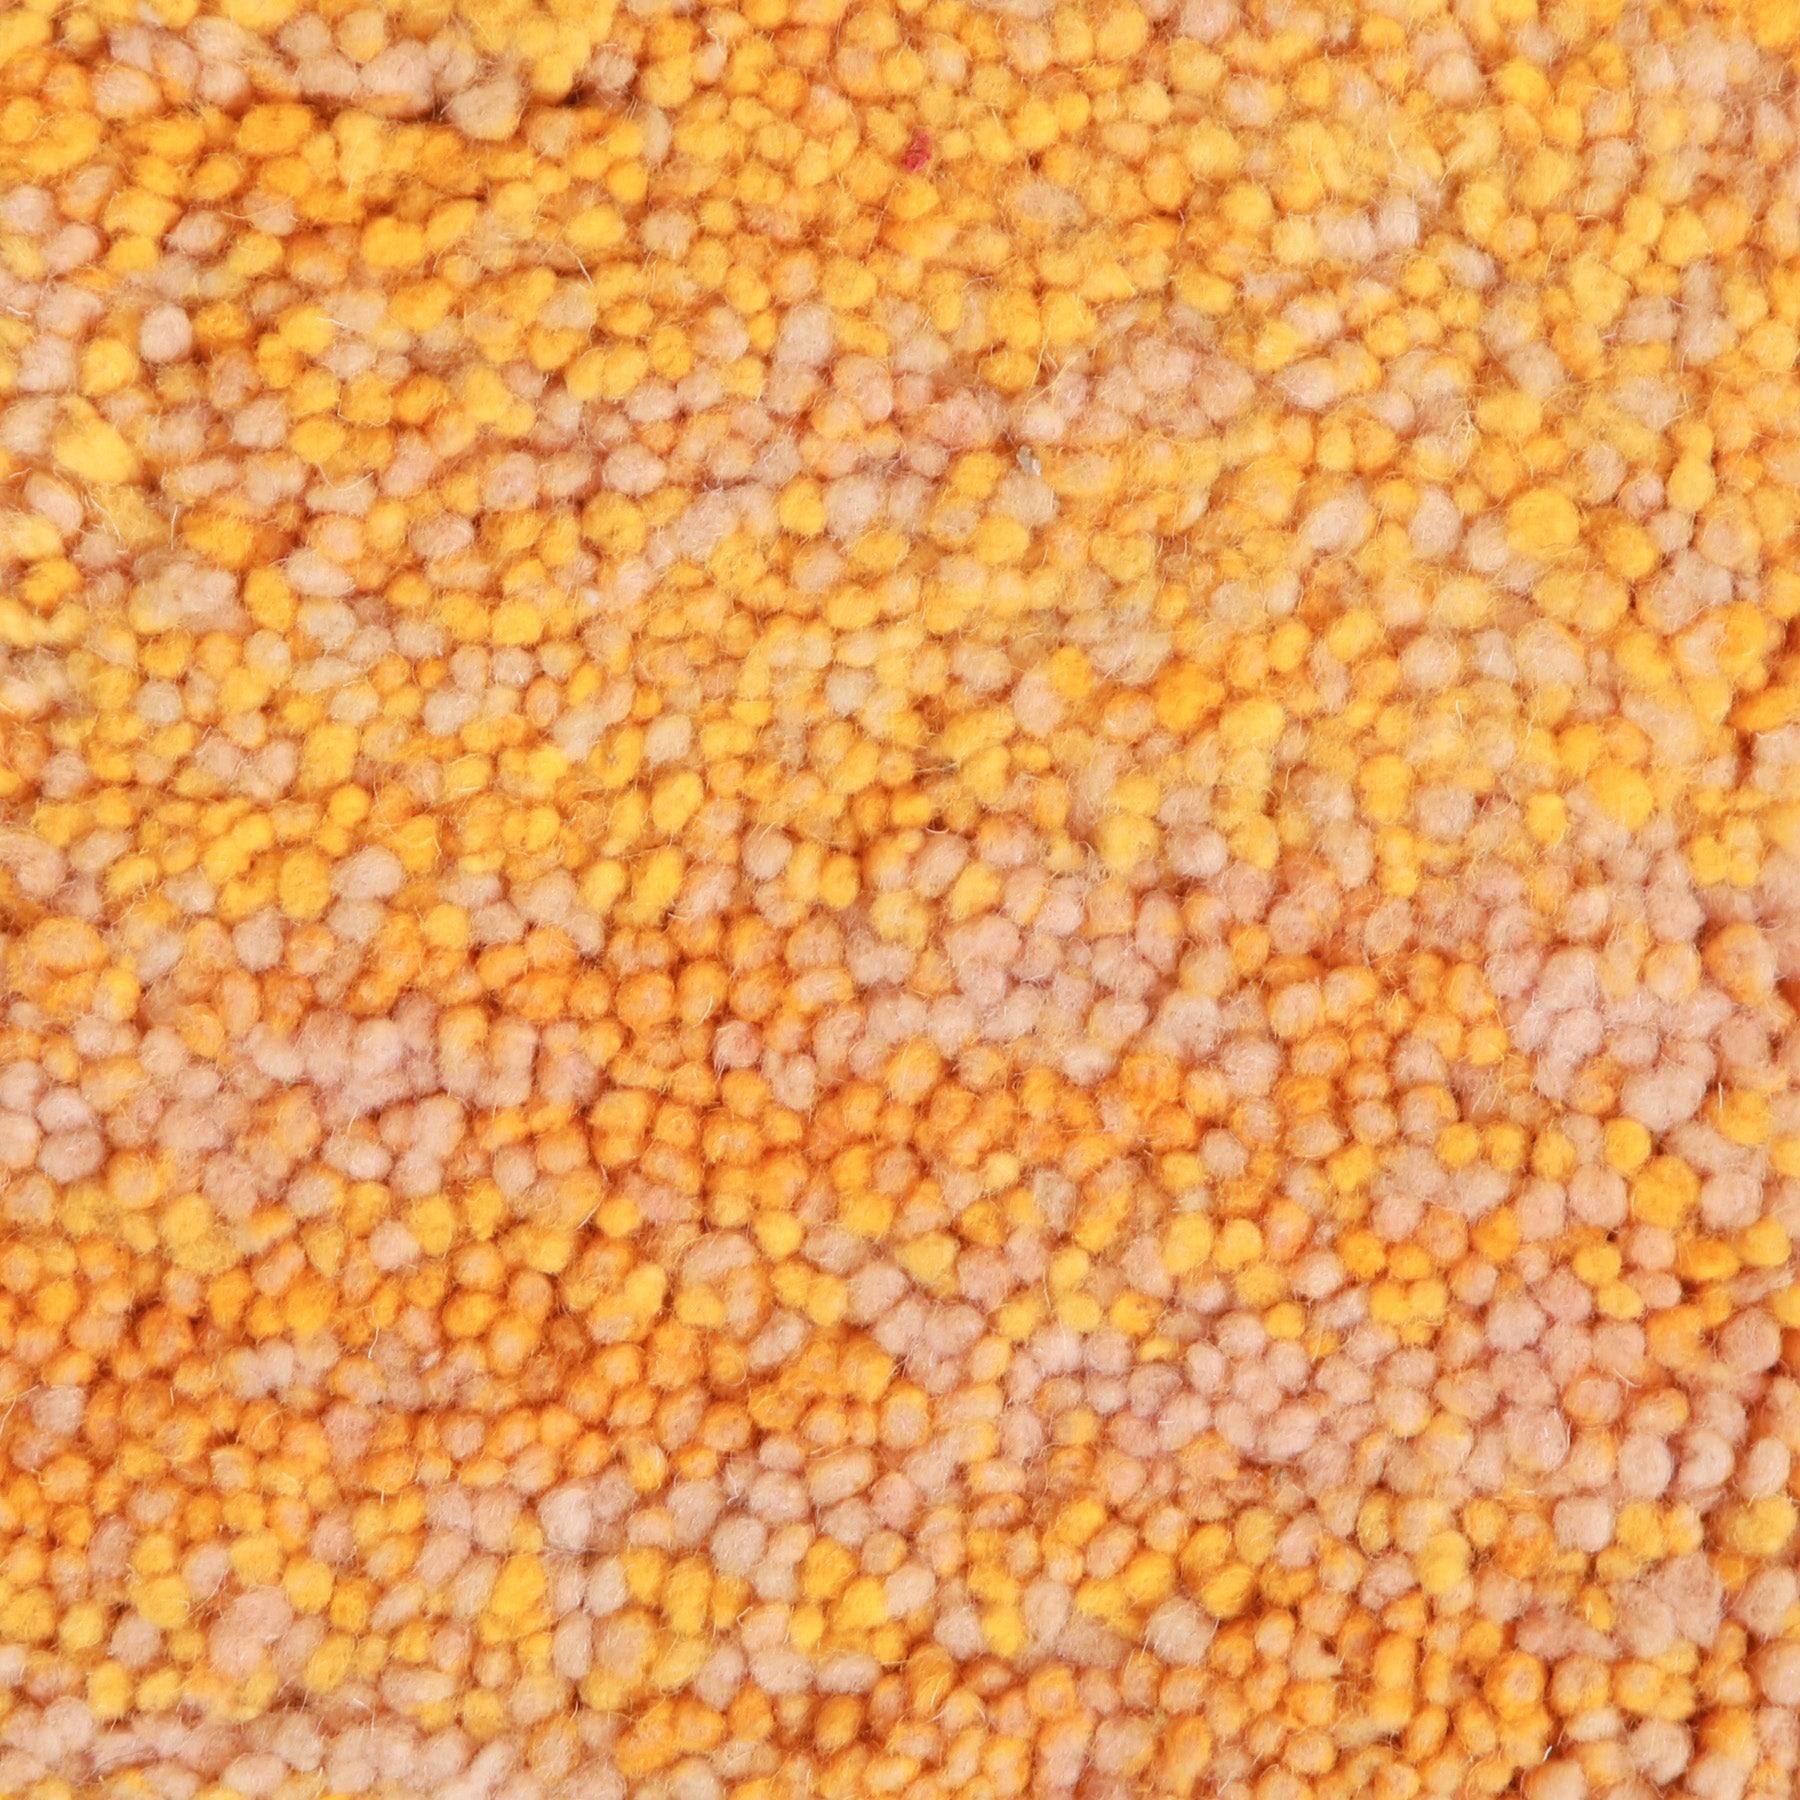 dettaglio del peli di lana dalle molteplici sfumature di giallo di un tappeto beni ourain realizzato a mano